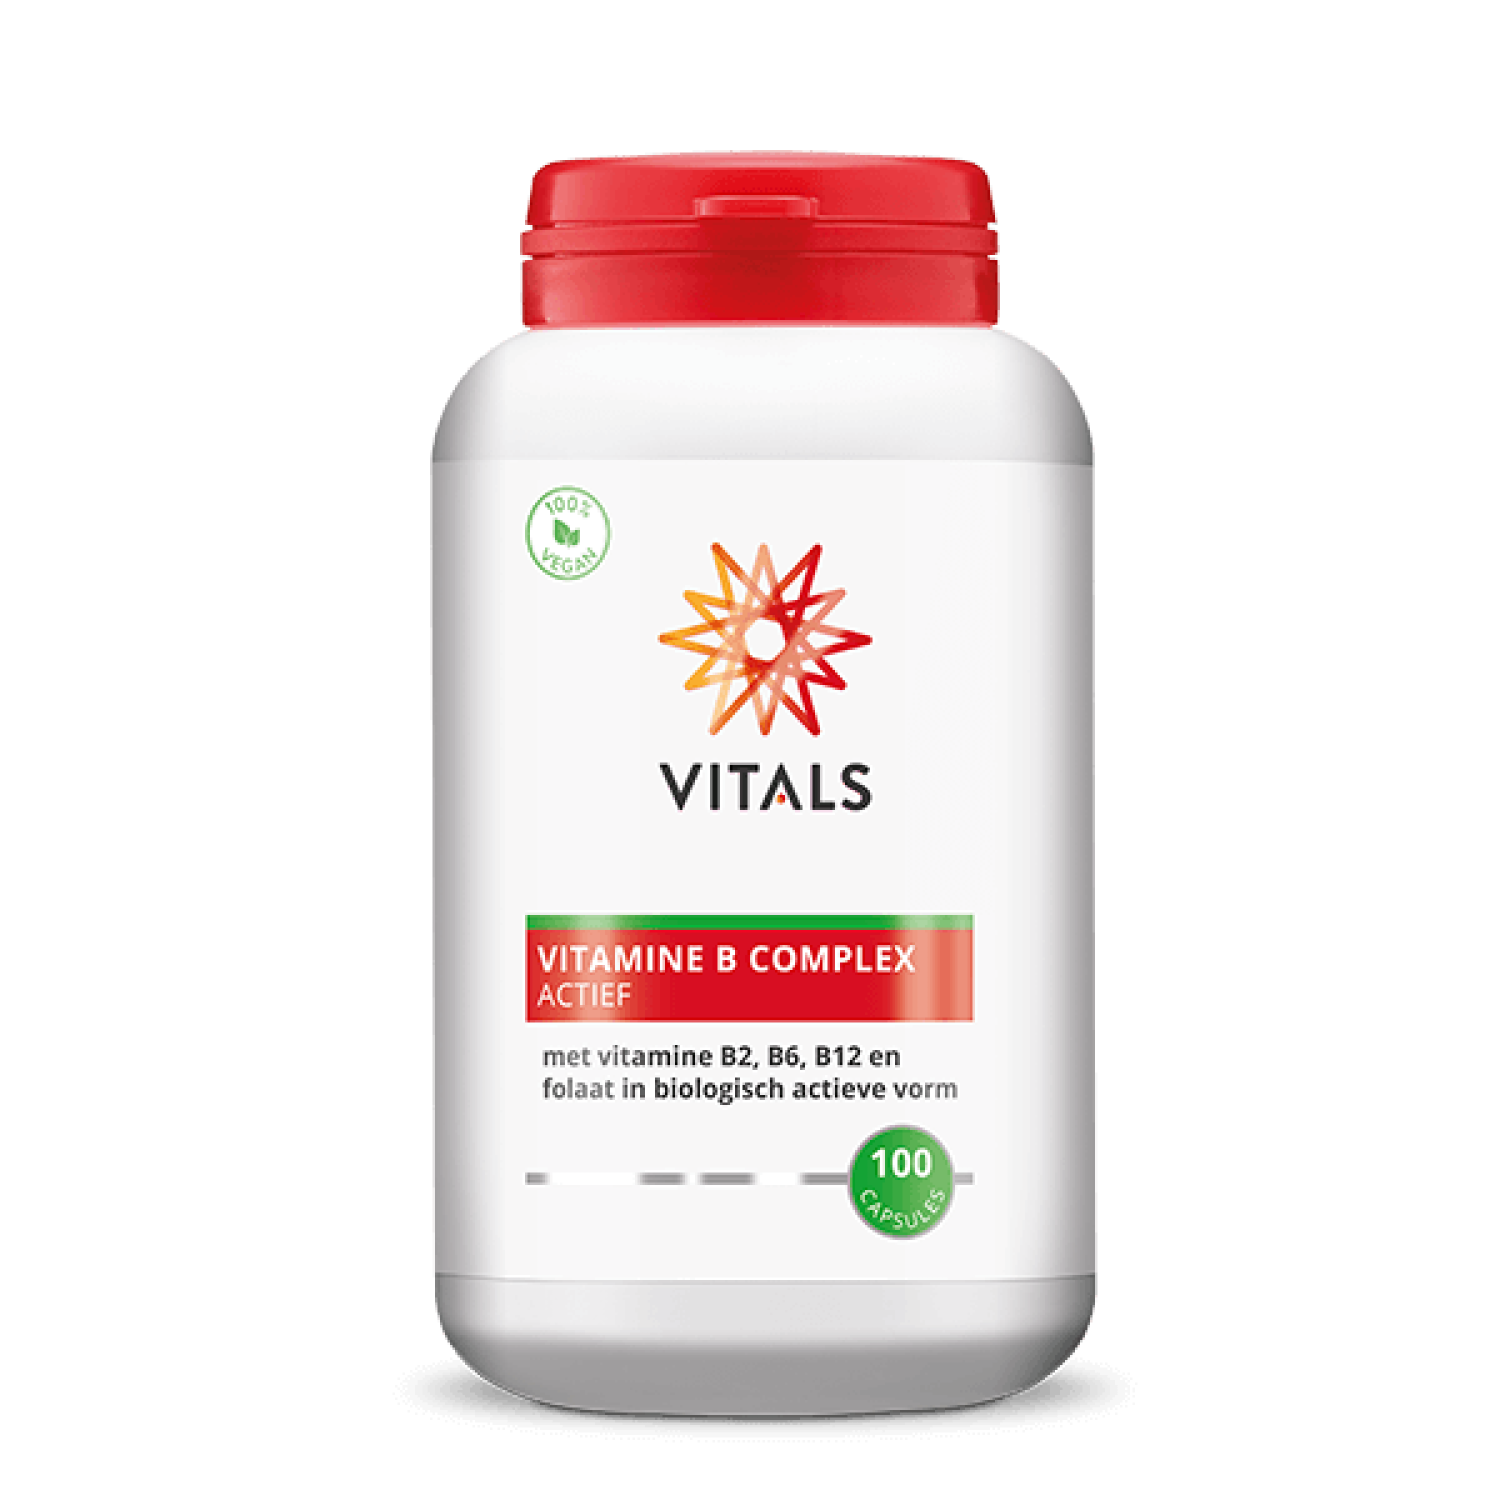 Vitals vitamine b complex actief